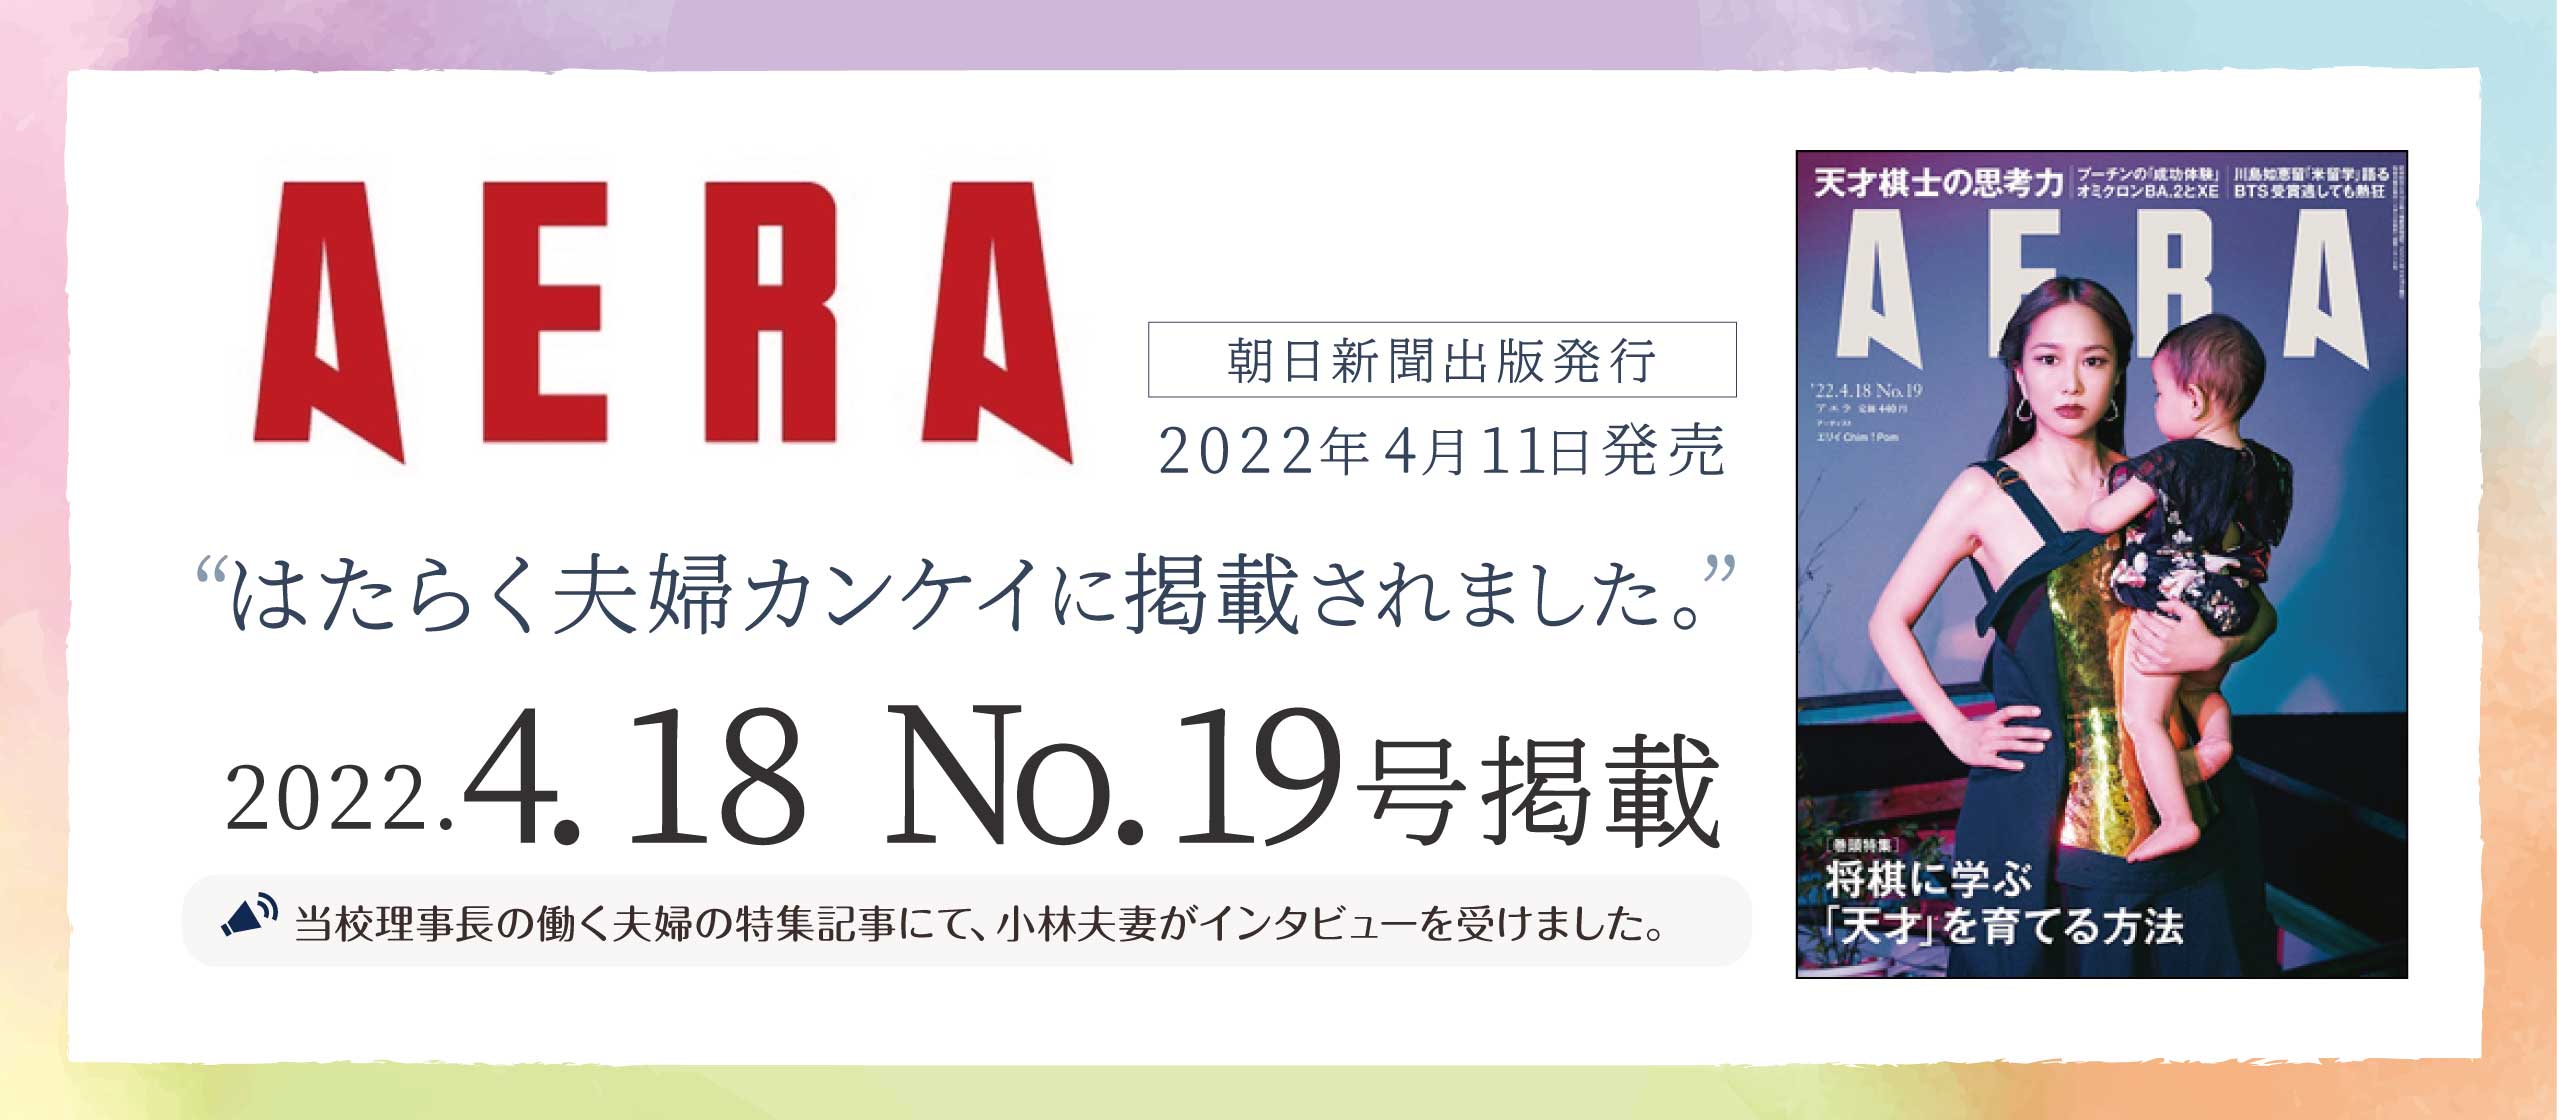 朝日新聞「AWERA」夫婦関係のインタビューを受け「はたらく夫婦カンケイ」に掲載されました。